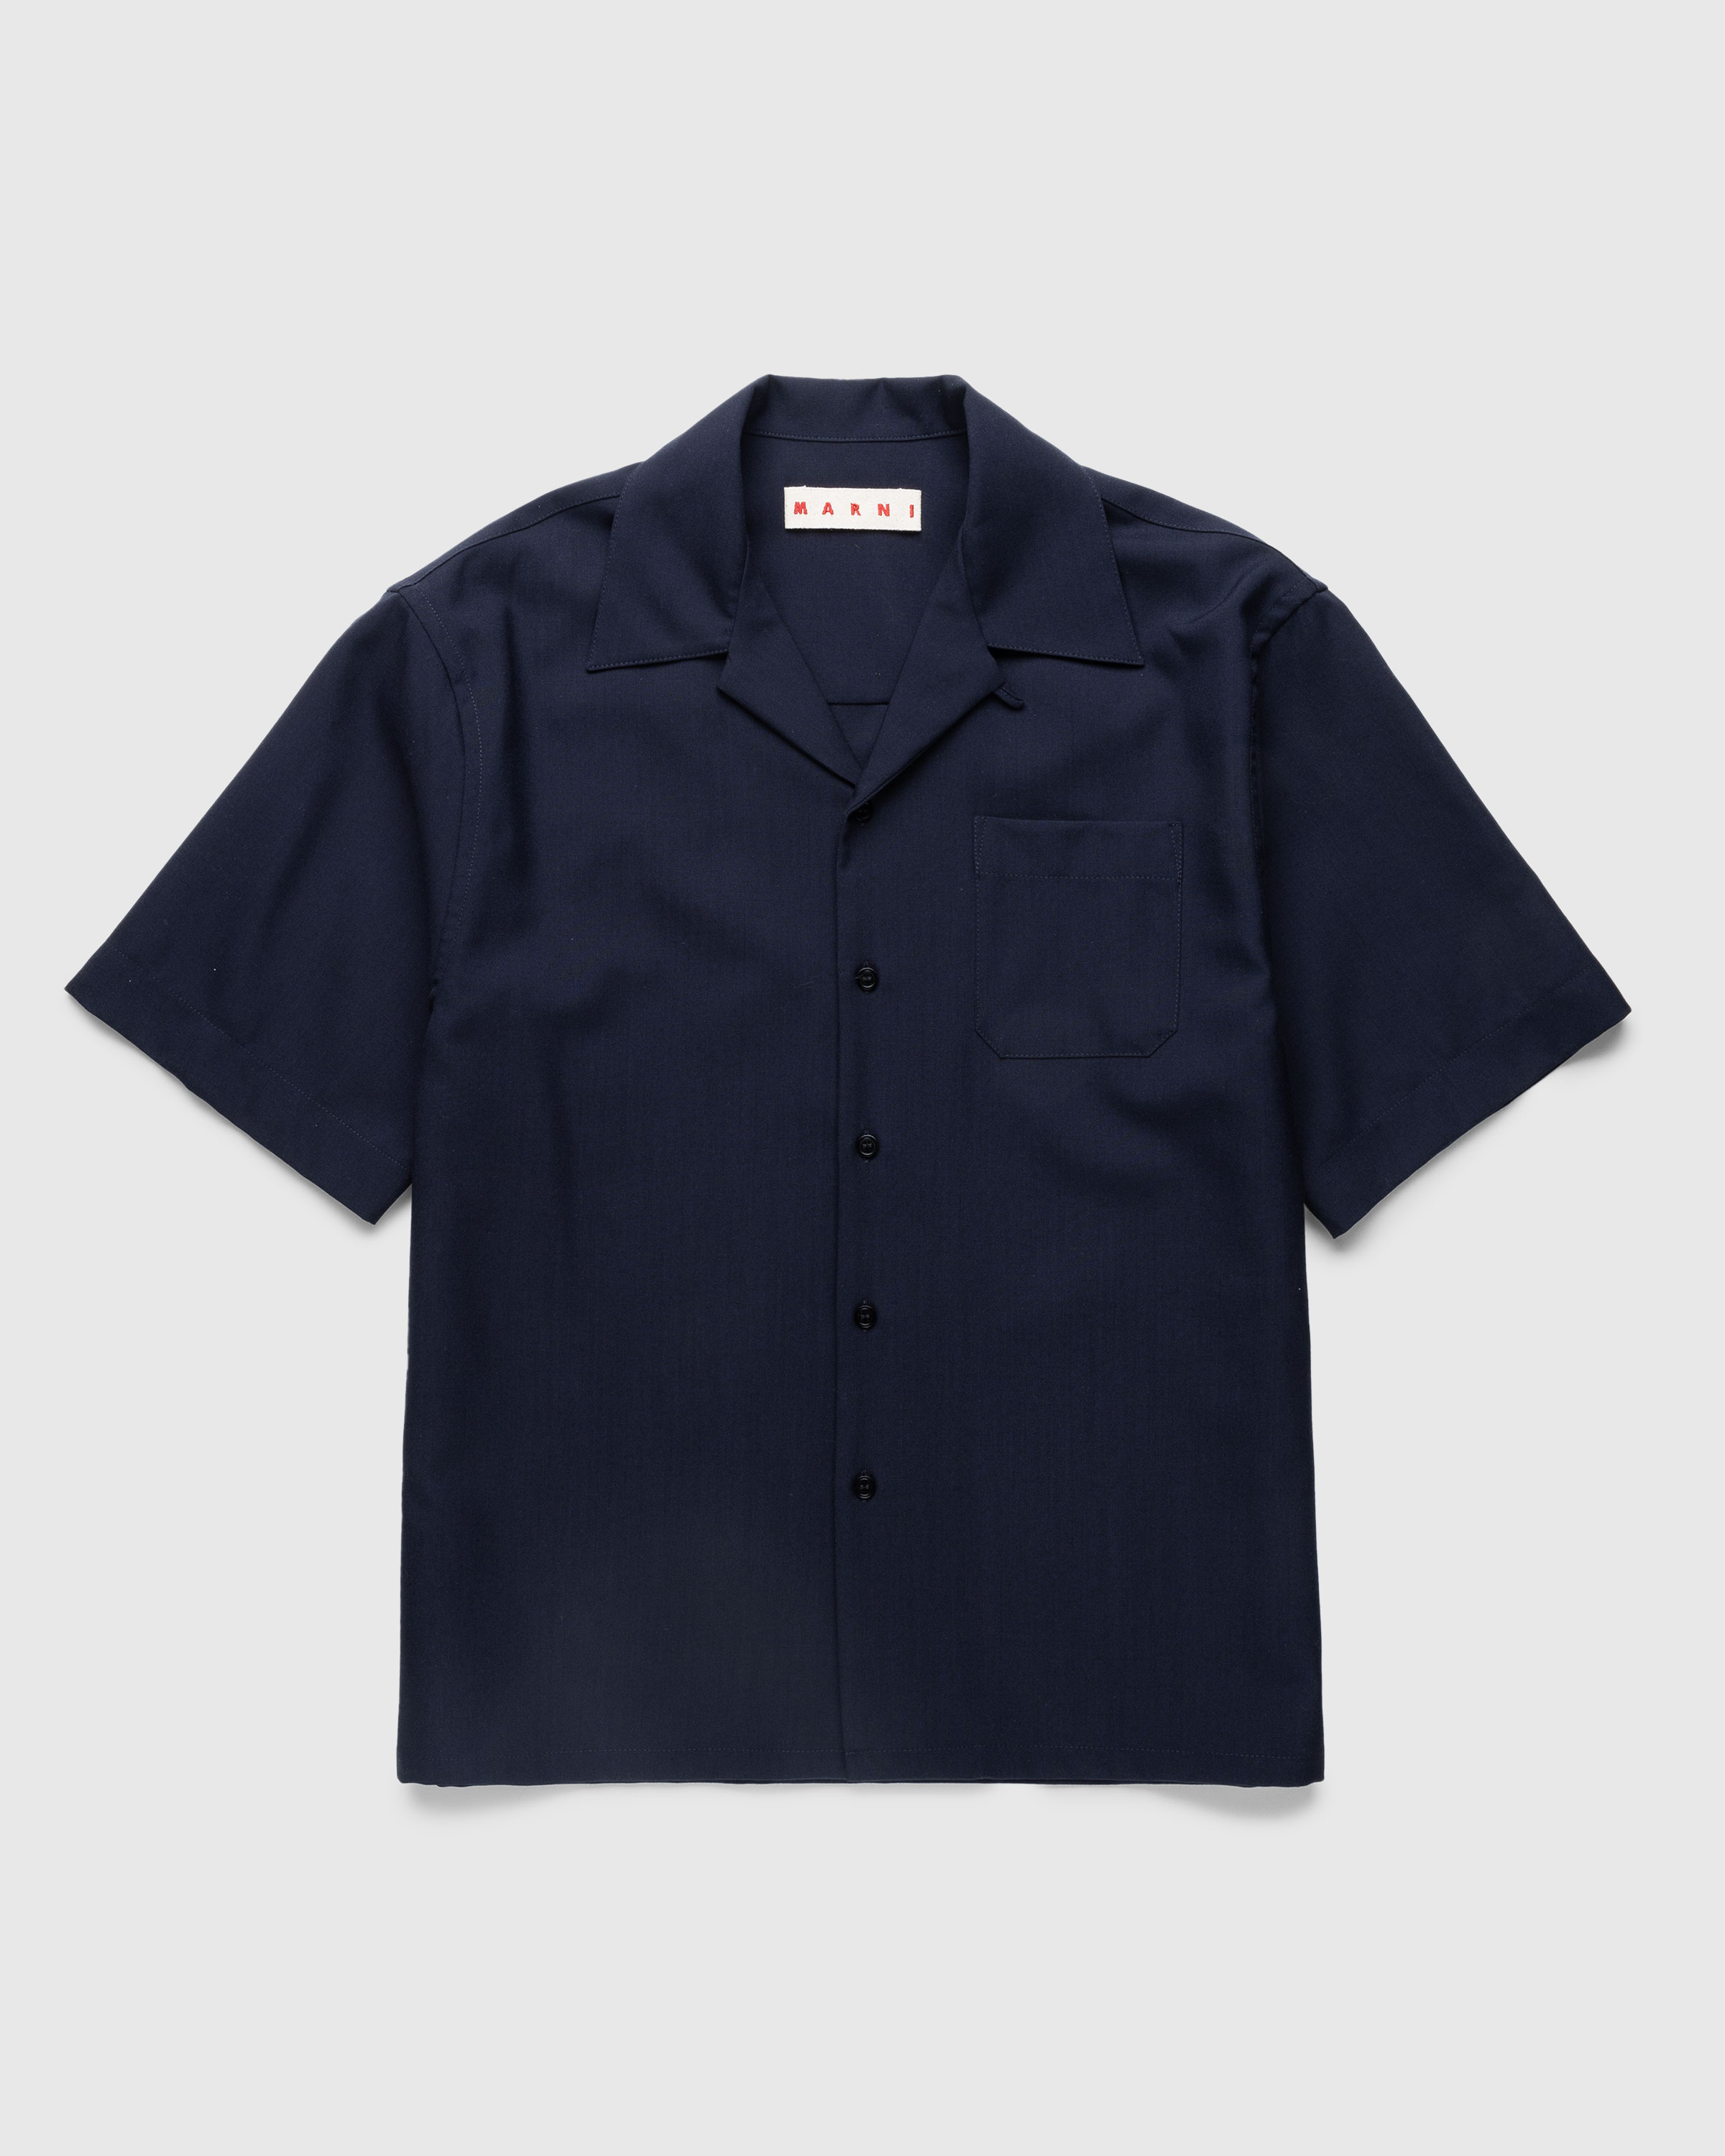 Marni - Bowling Shirt Navy - Clothing - Blue - Image 1